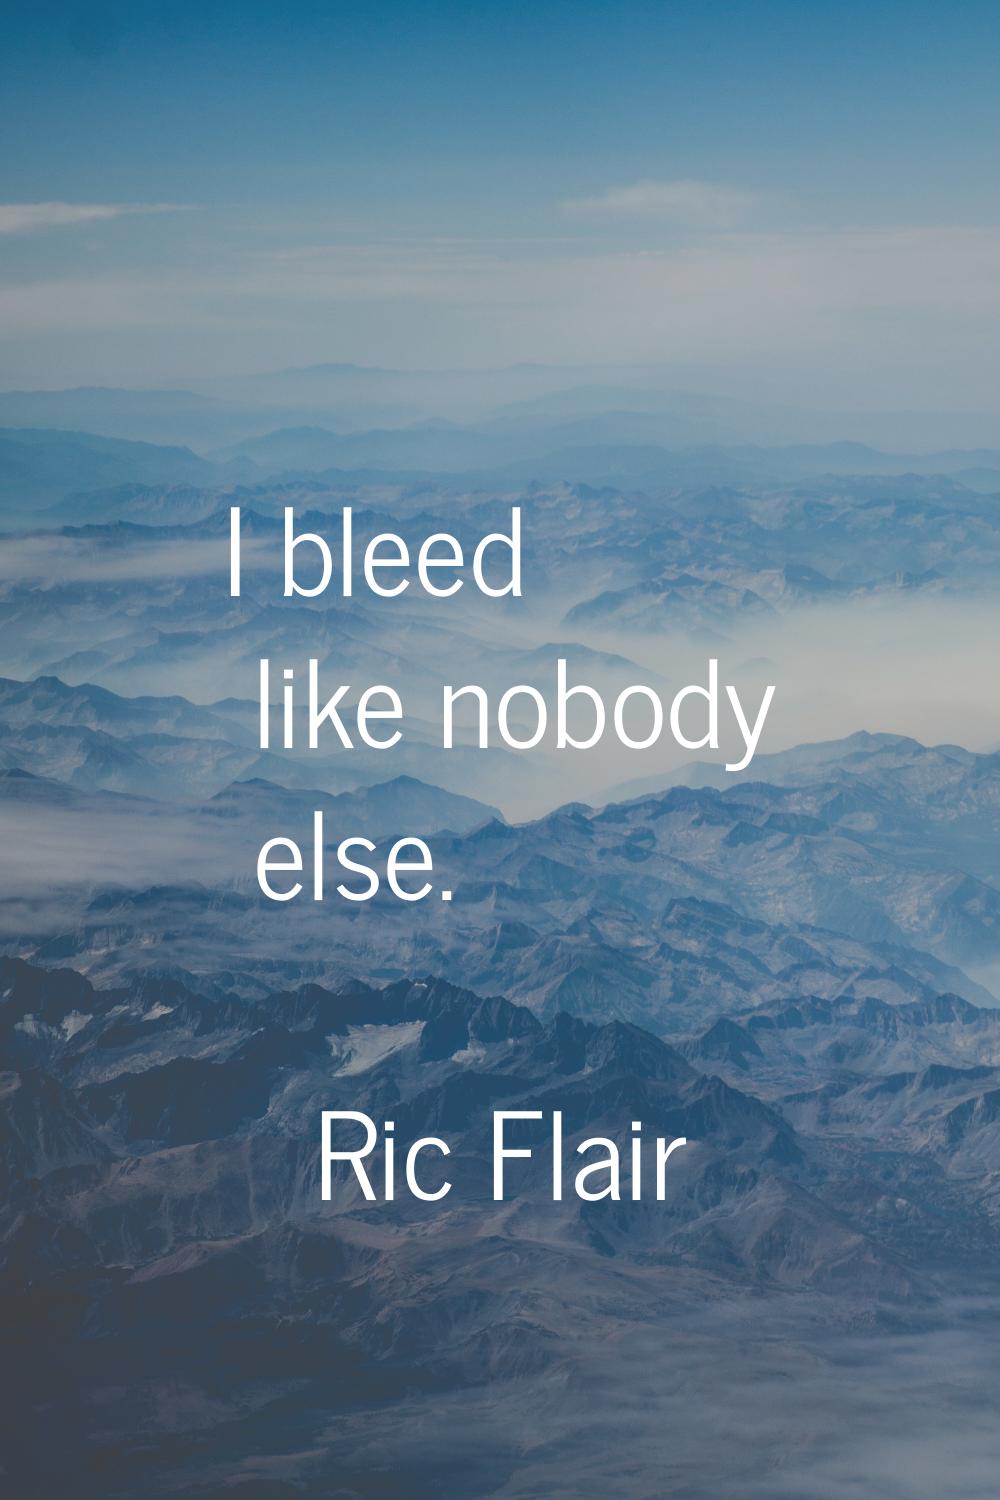 I bleed like nobody else.